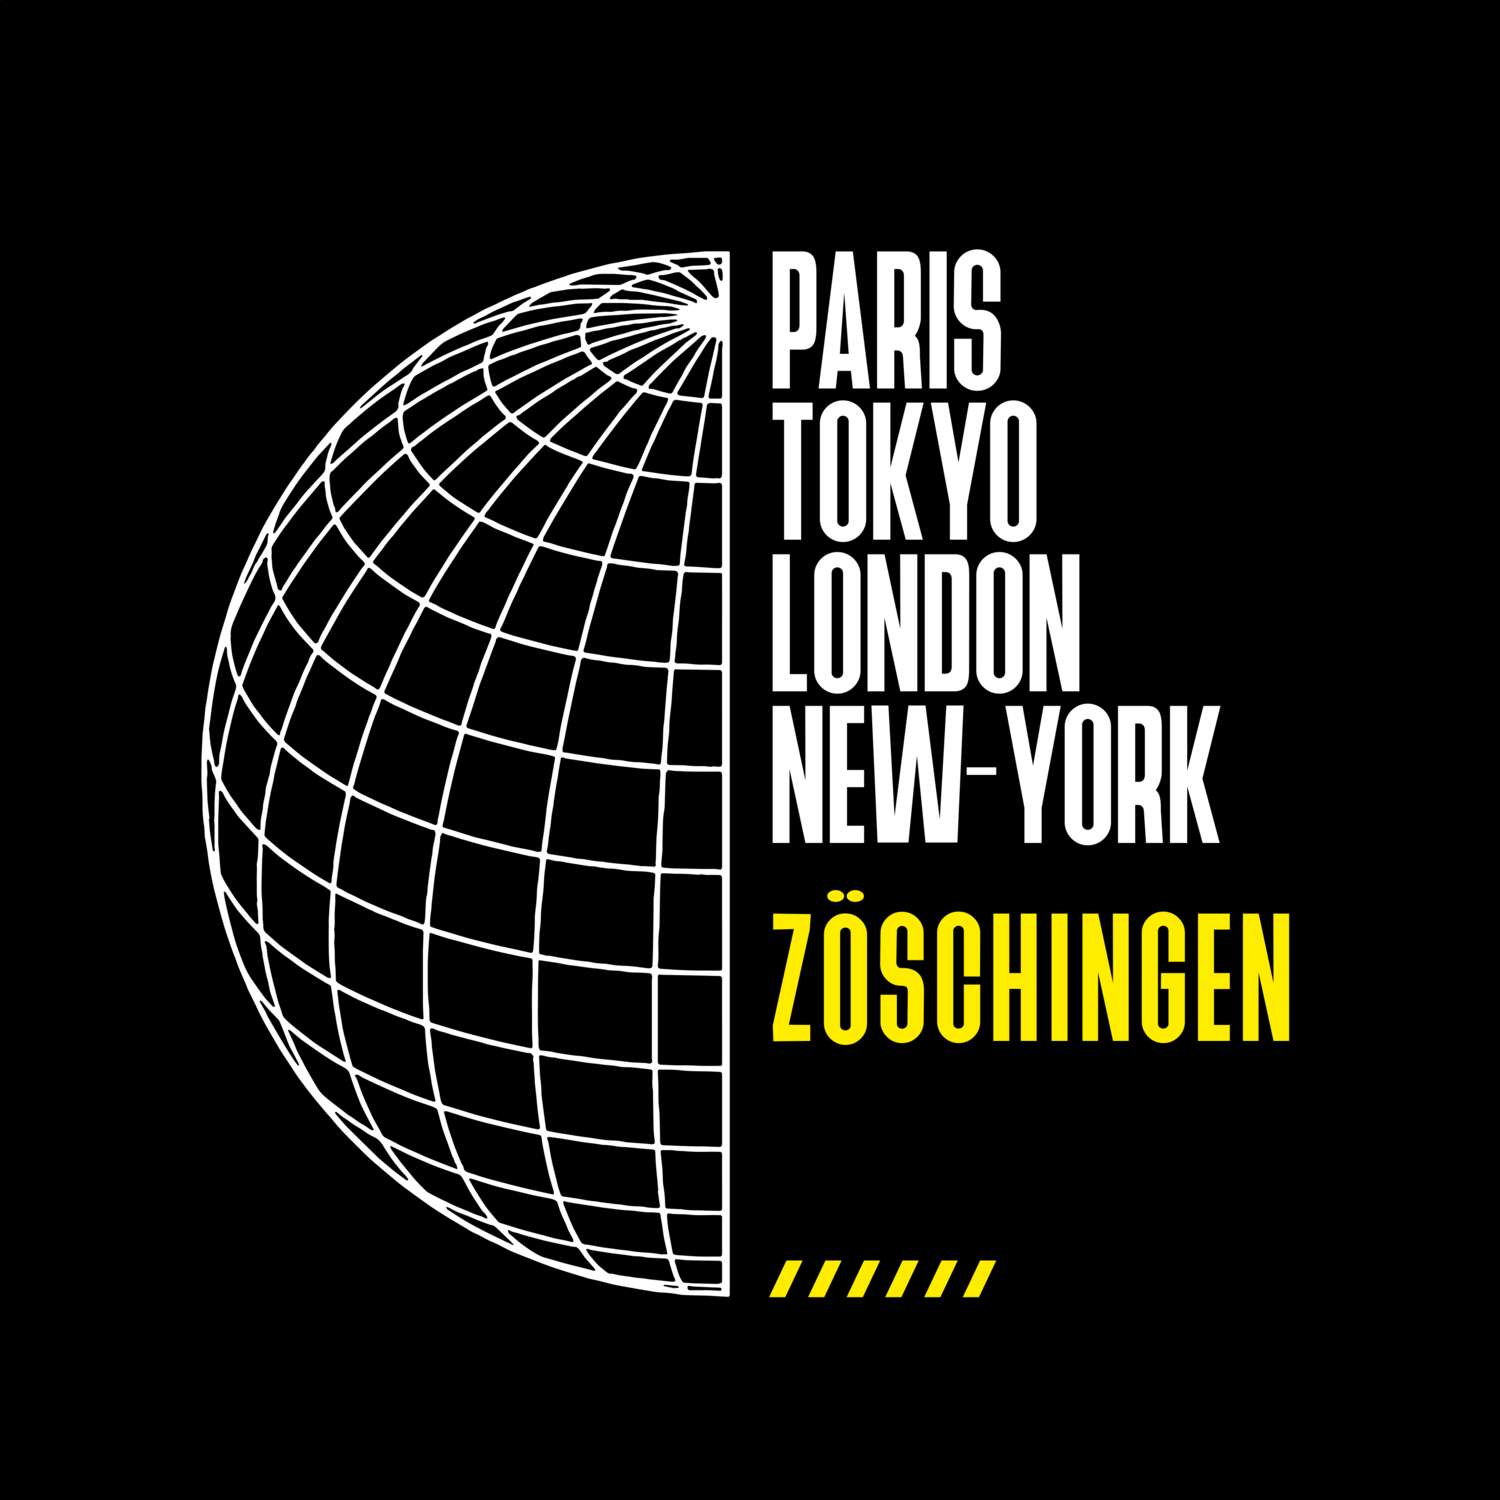 Zöschingen T-Shirt »Paris Tokyo London«